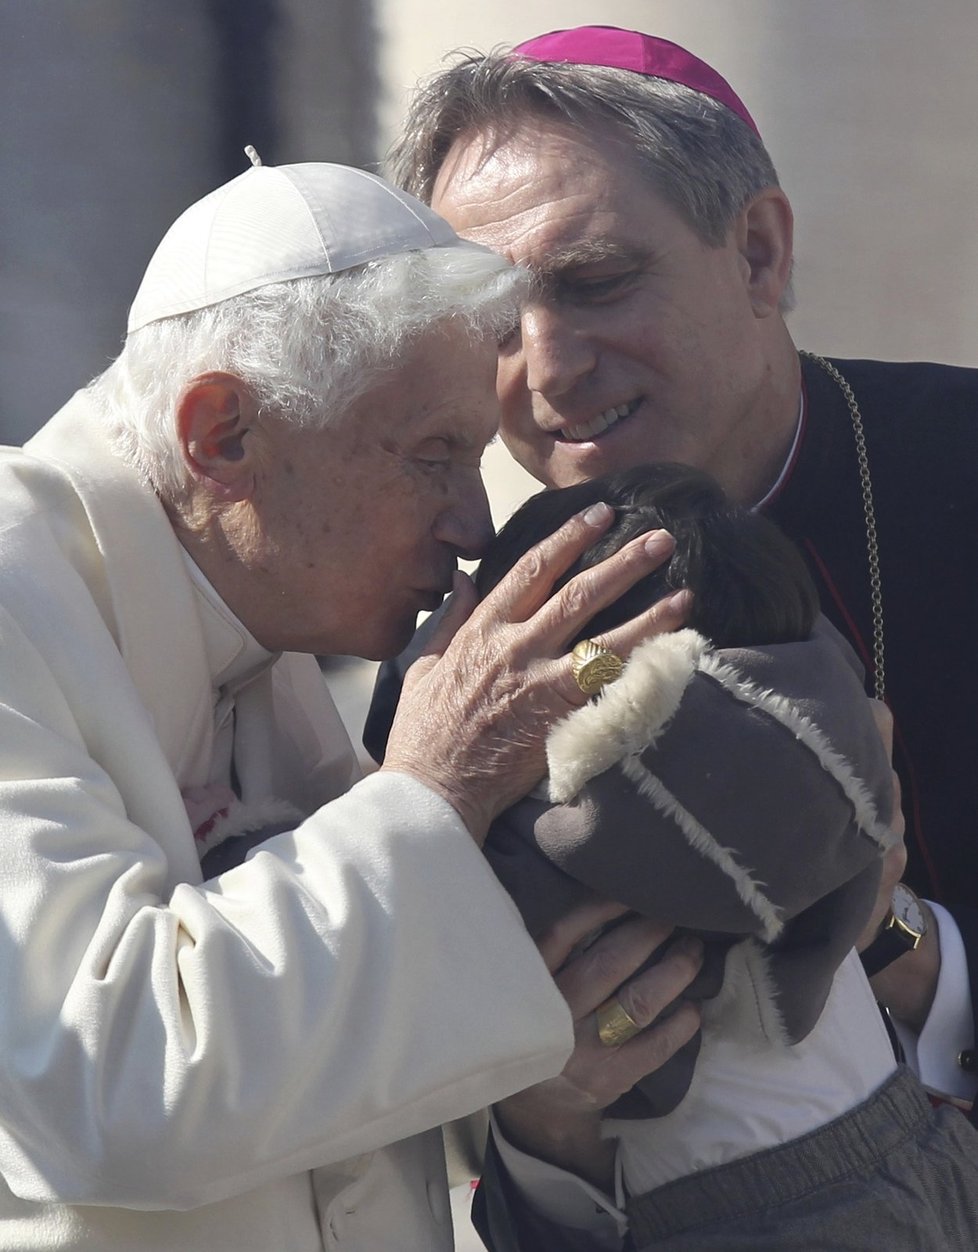 Papež líbá křesťanské děti